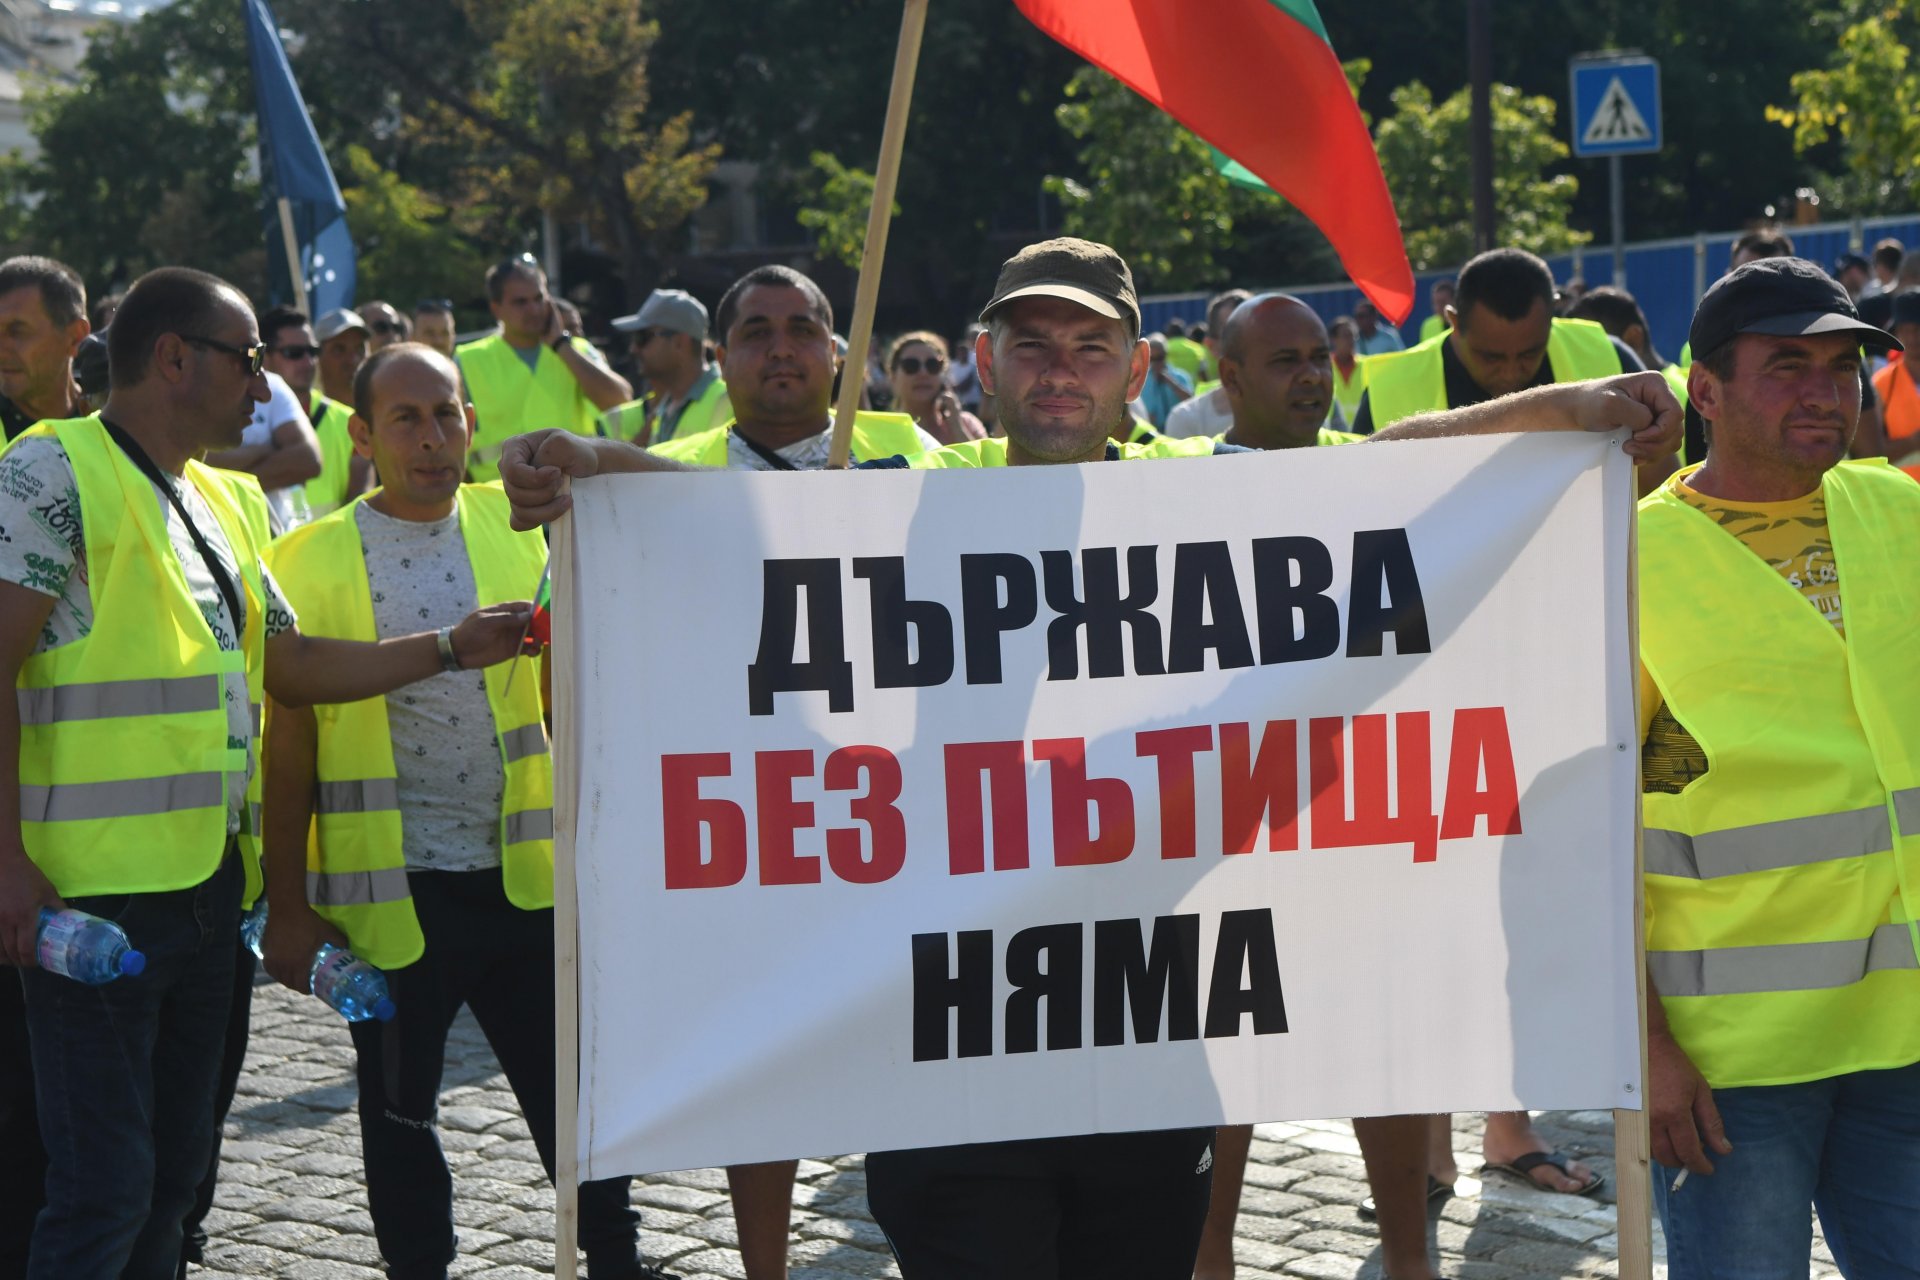  Протестиращите пътностроителни фирми затвориха движението в района на Народното събрание